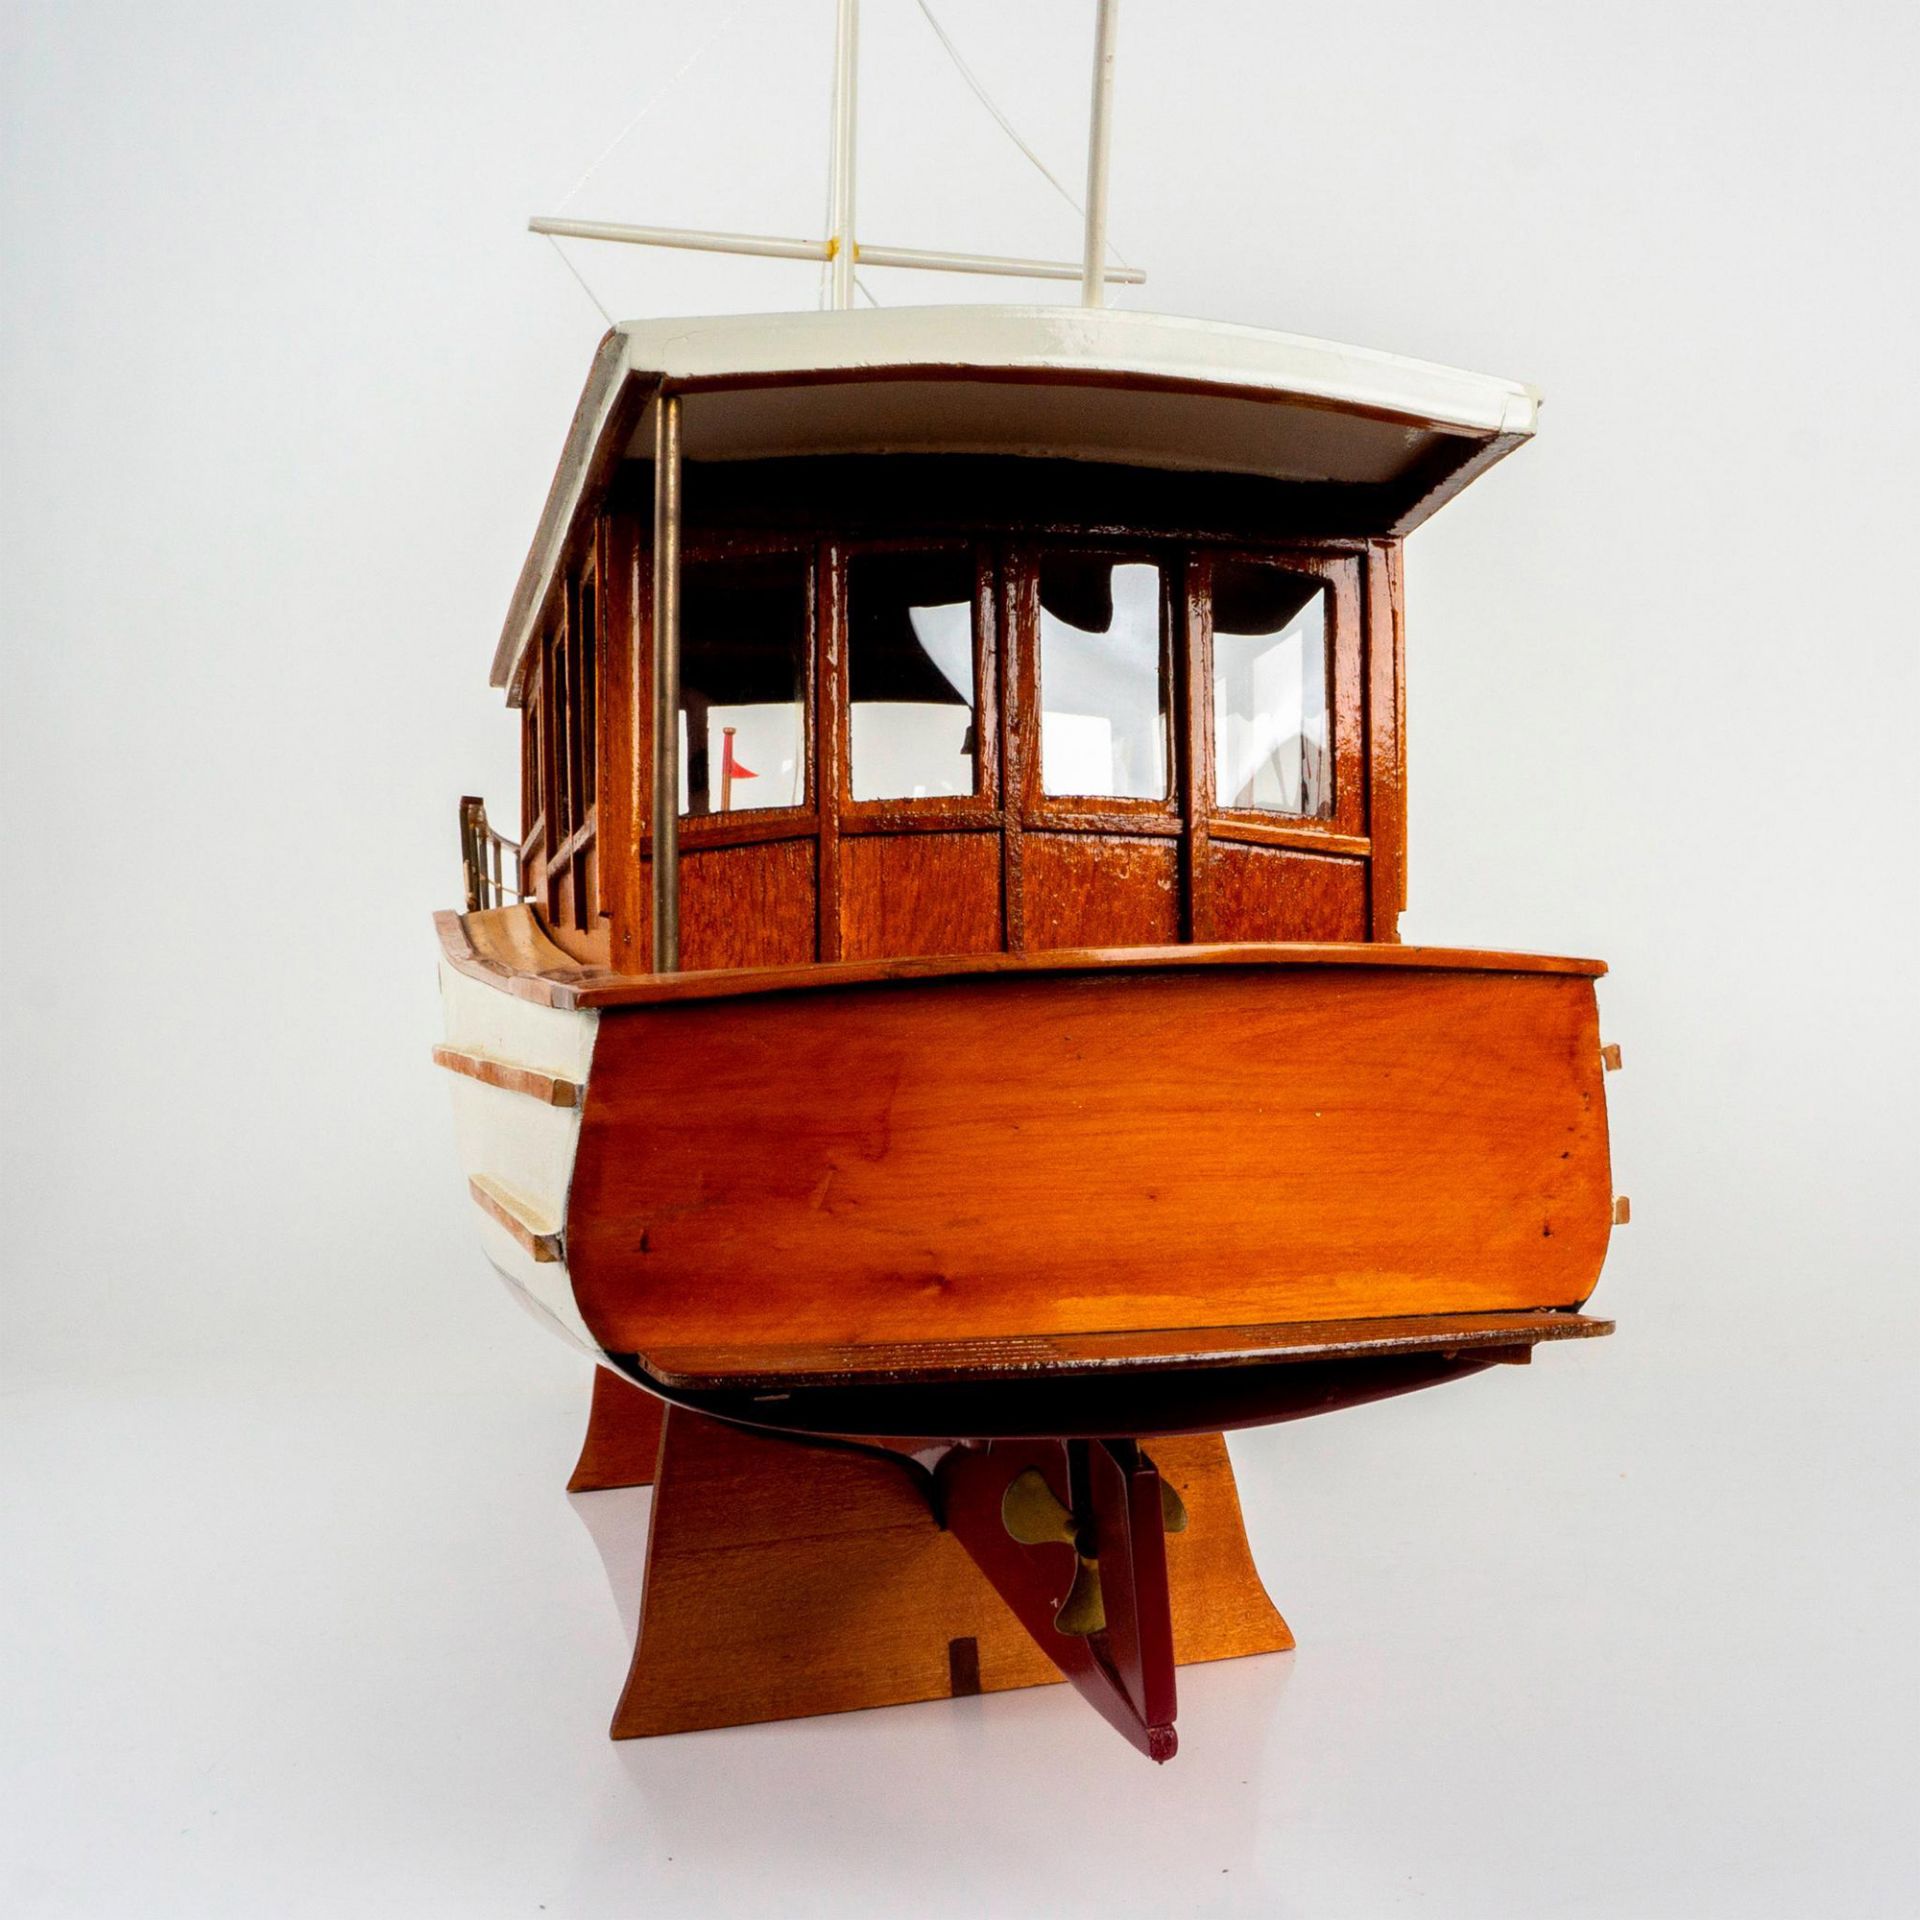 1929 Lake Union Dreamboat Large Wood Model Boat - Image 3 of 5